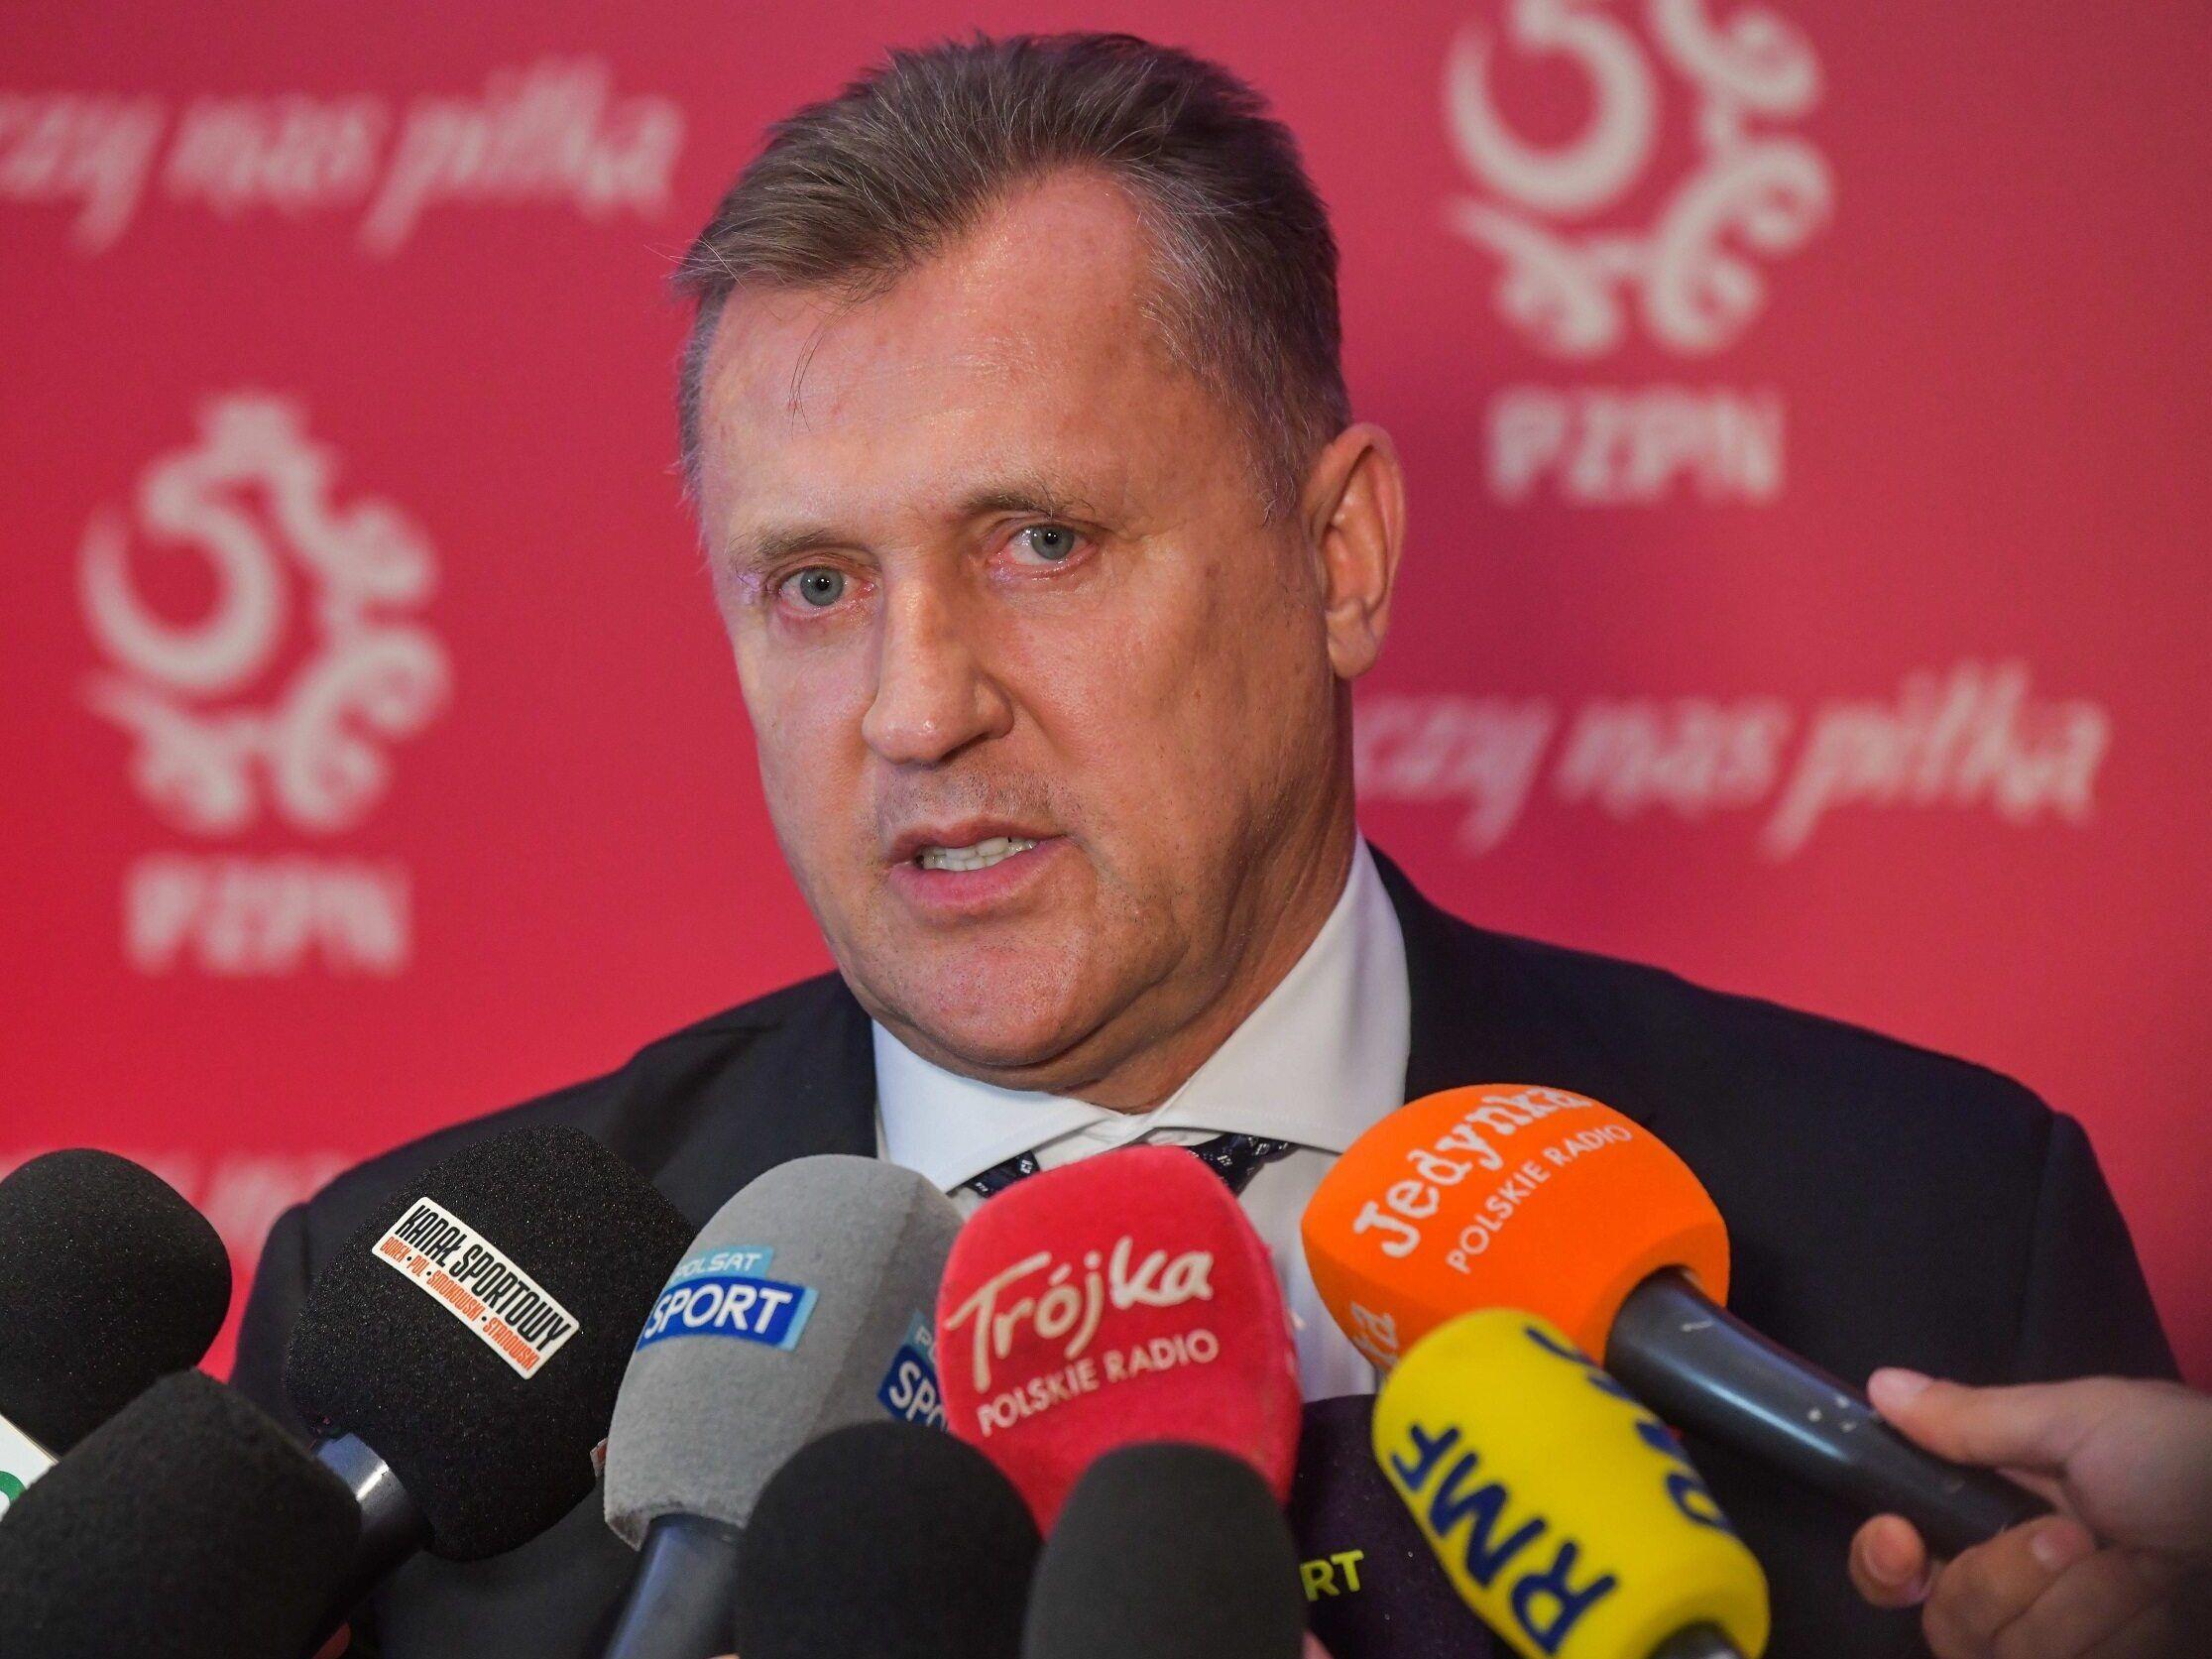 波兰足协主席 依然不会和俄罗斯比赛 无论对方用什么名义 腮马新闻网